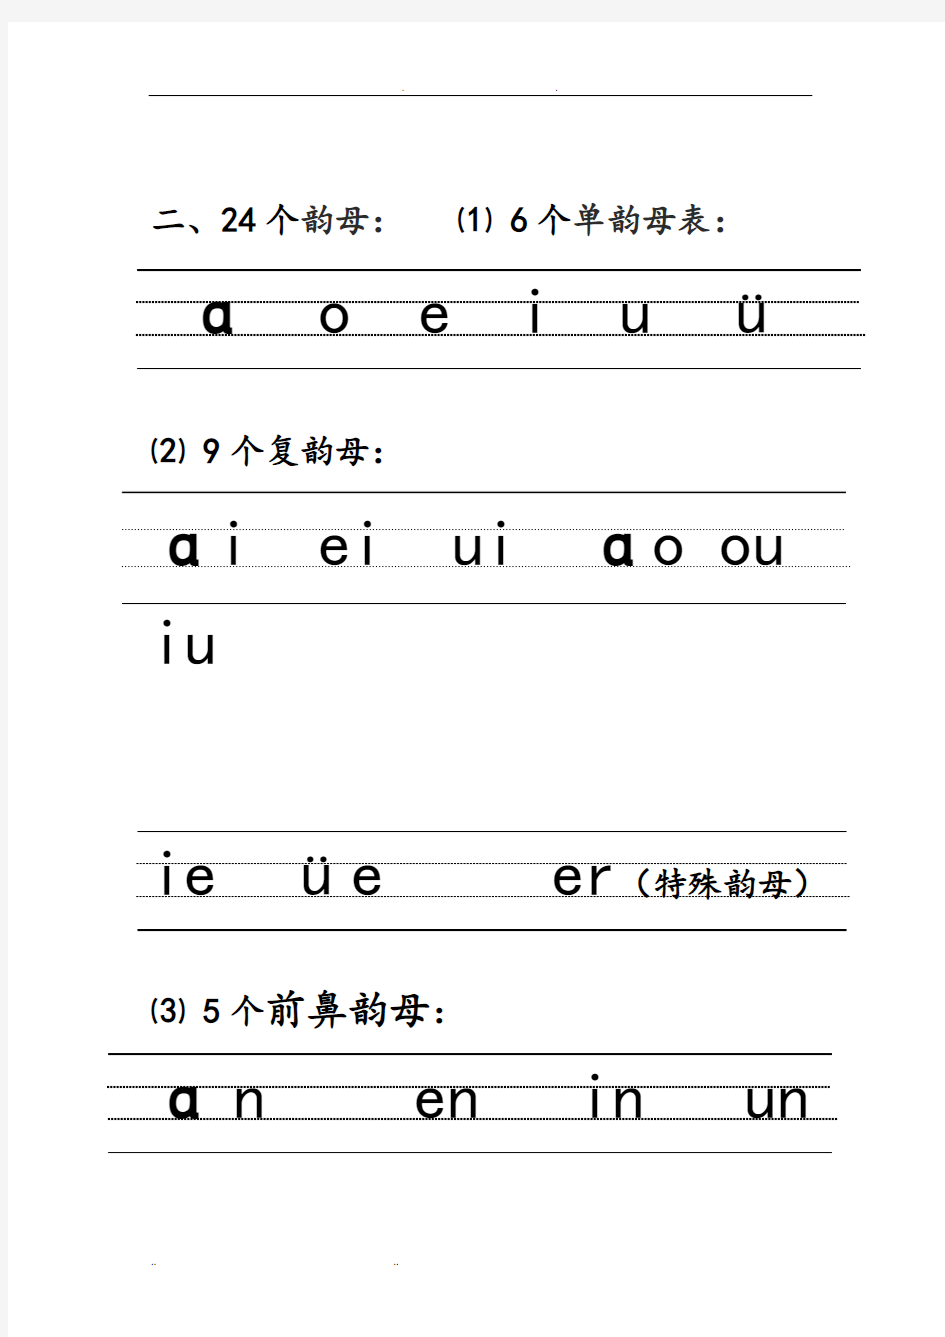 汉语拼音的书写格式_(最新四线三格)_图文